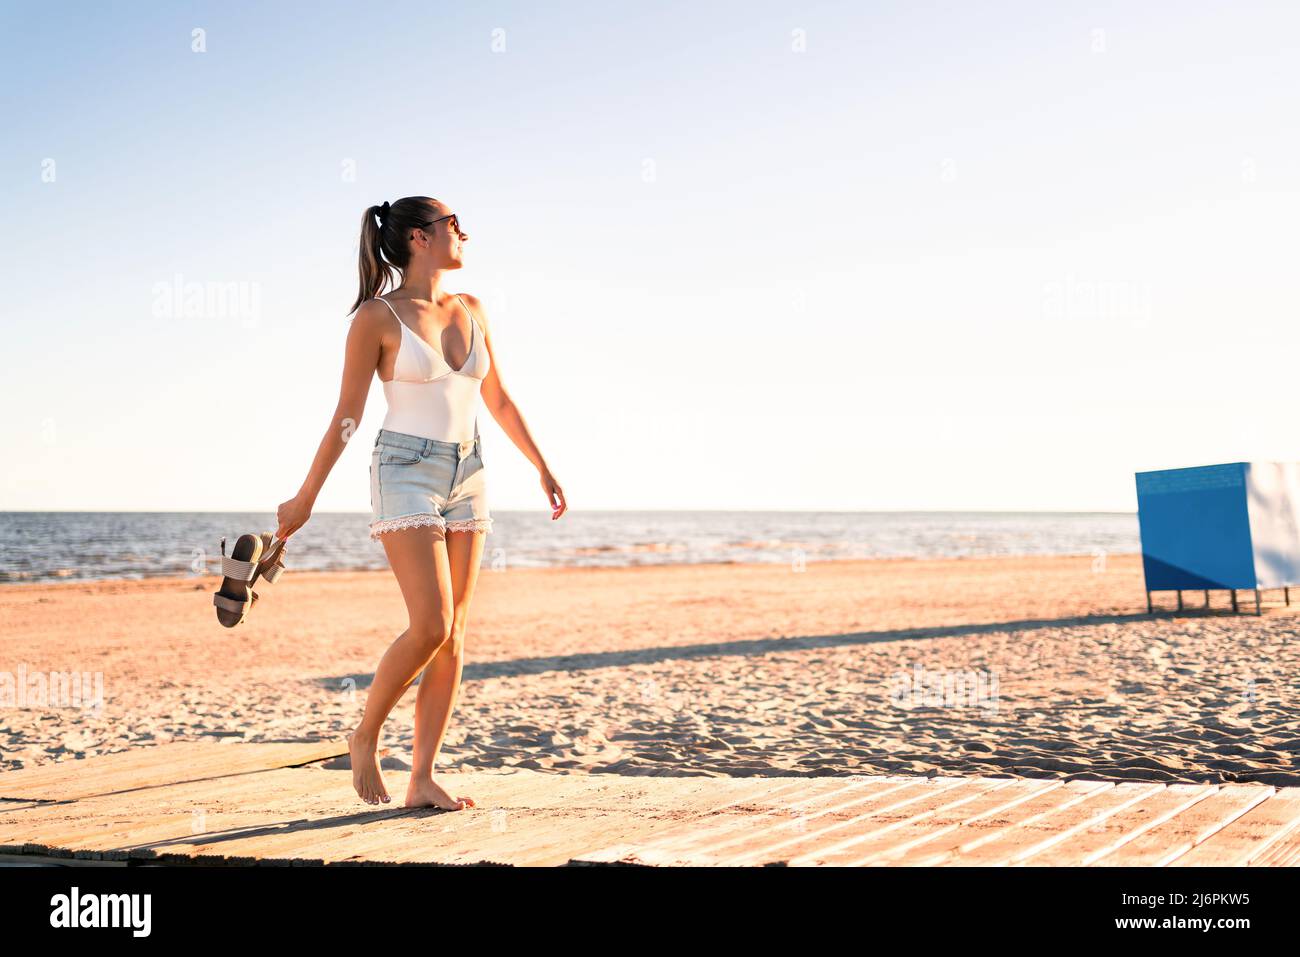 Baile en la playa al atardecer. Juguetona mujer positiva caminando por la orilla del mar. Libertad de verano, bienestar y estilo de vida feliz. Vacaciones junto al mar divertidas. Foto de stock